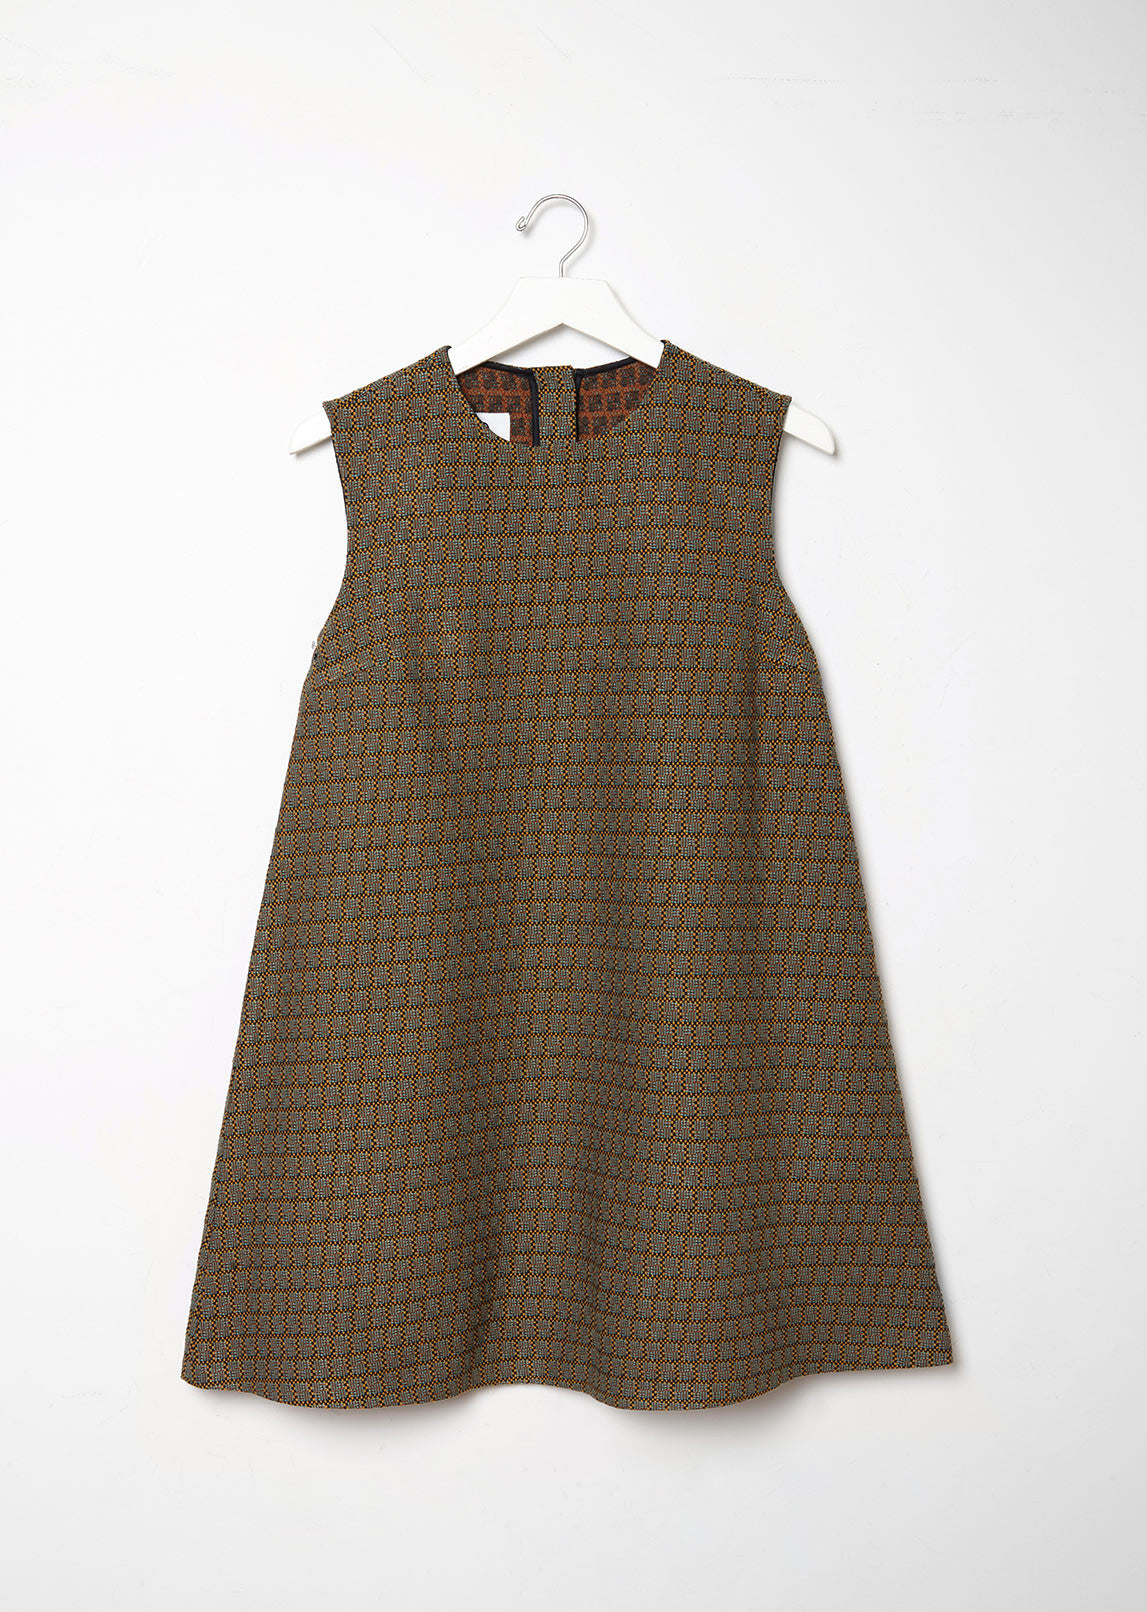 70's Suiting Jacquard Dress by MM6 Maison Margiela - La Garçonne